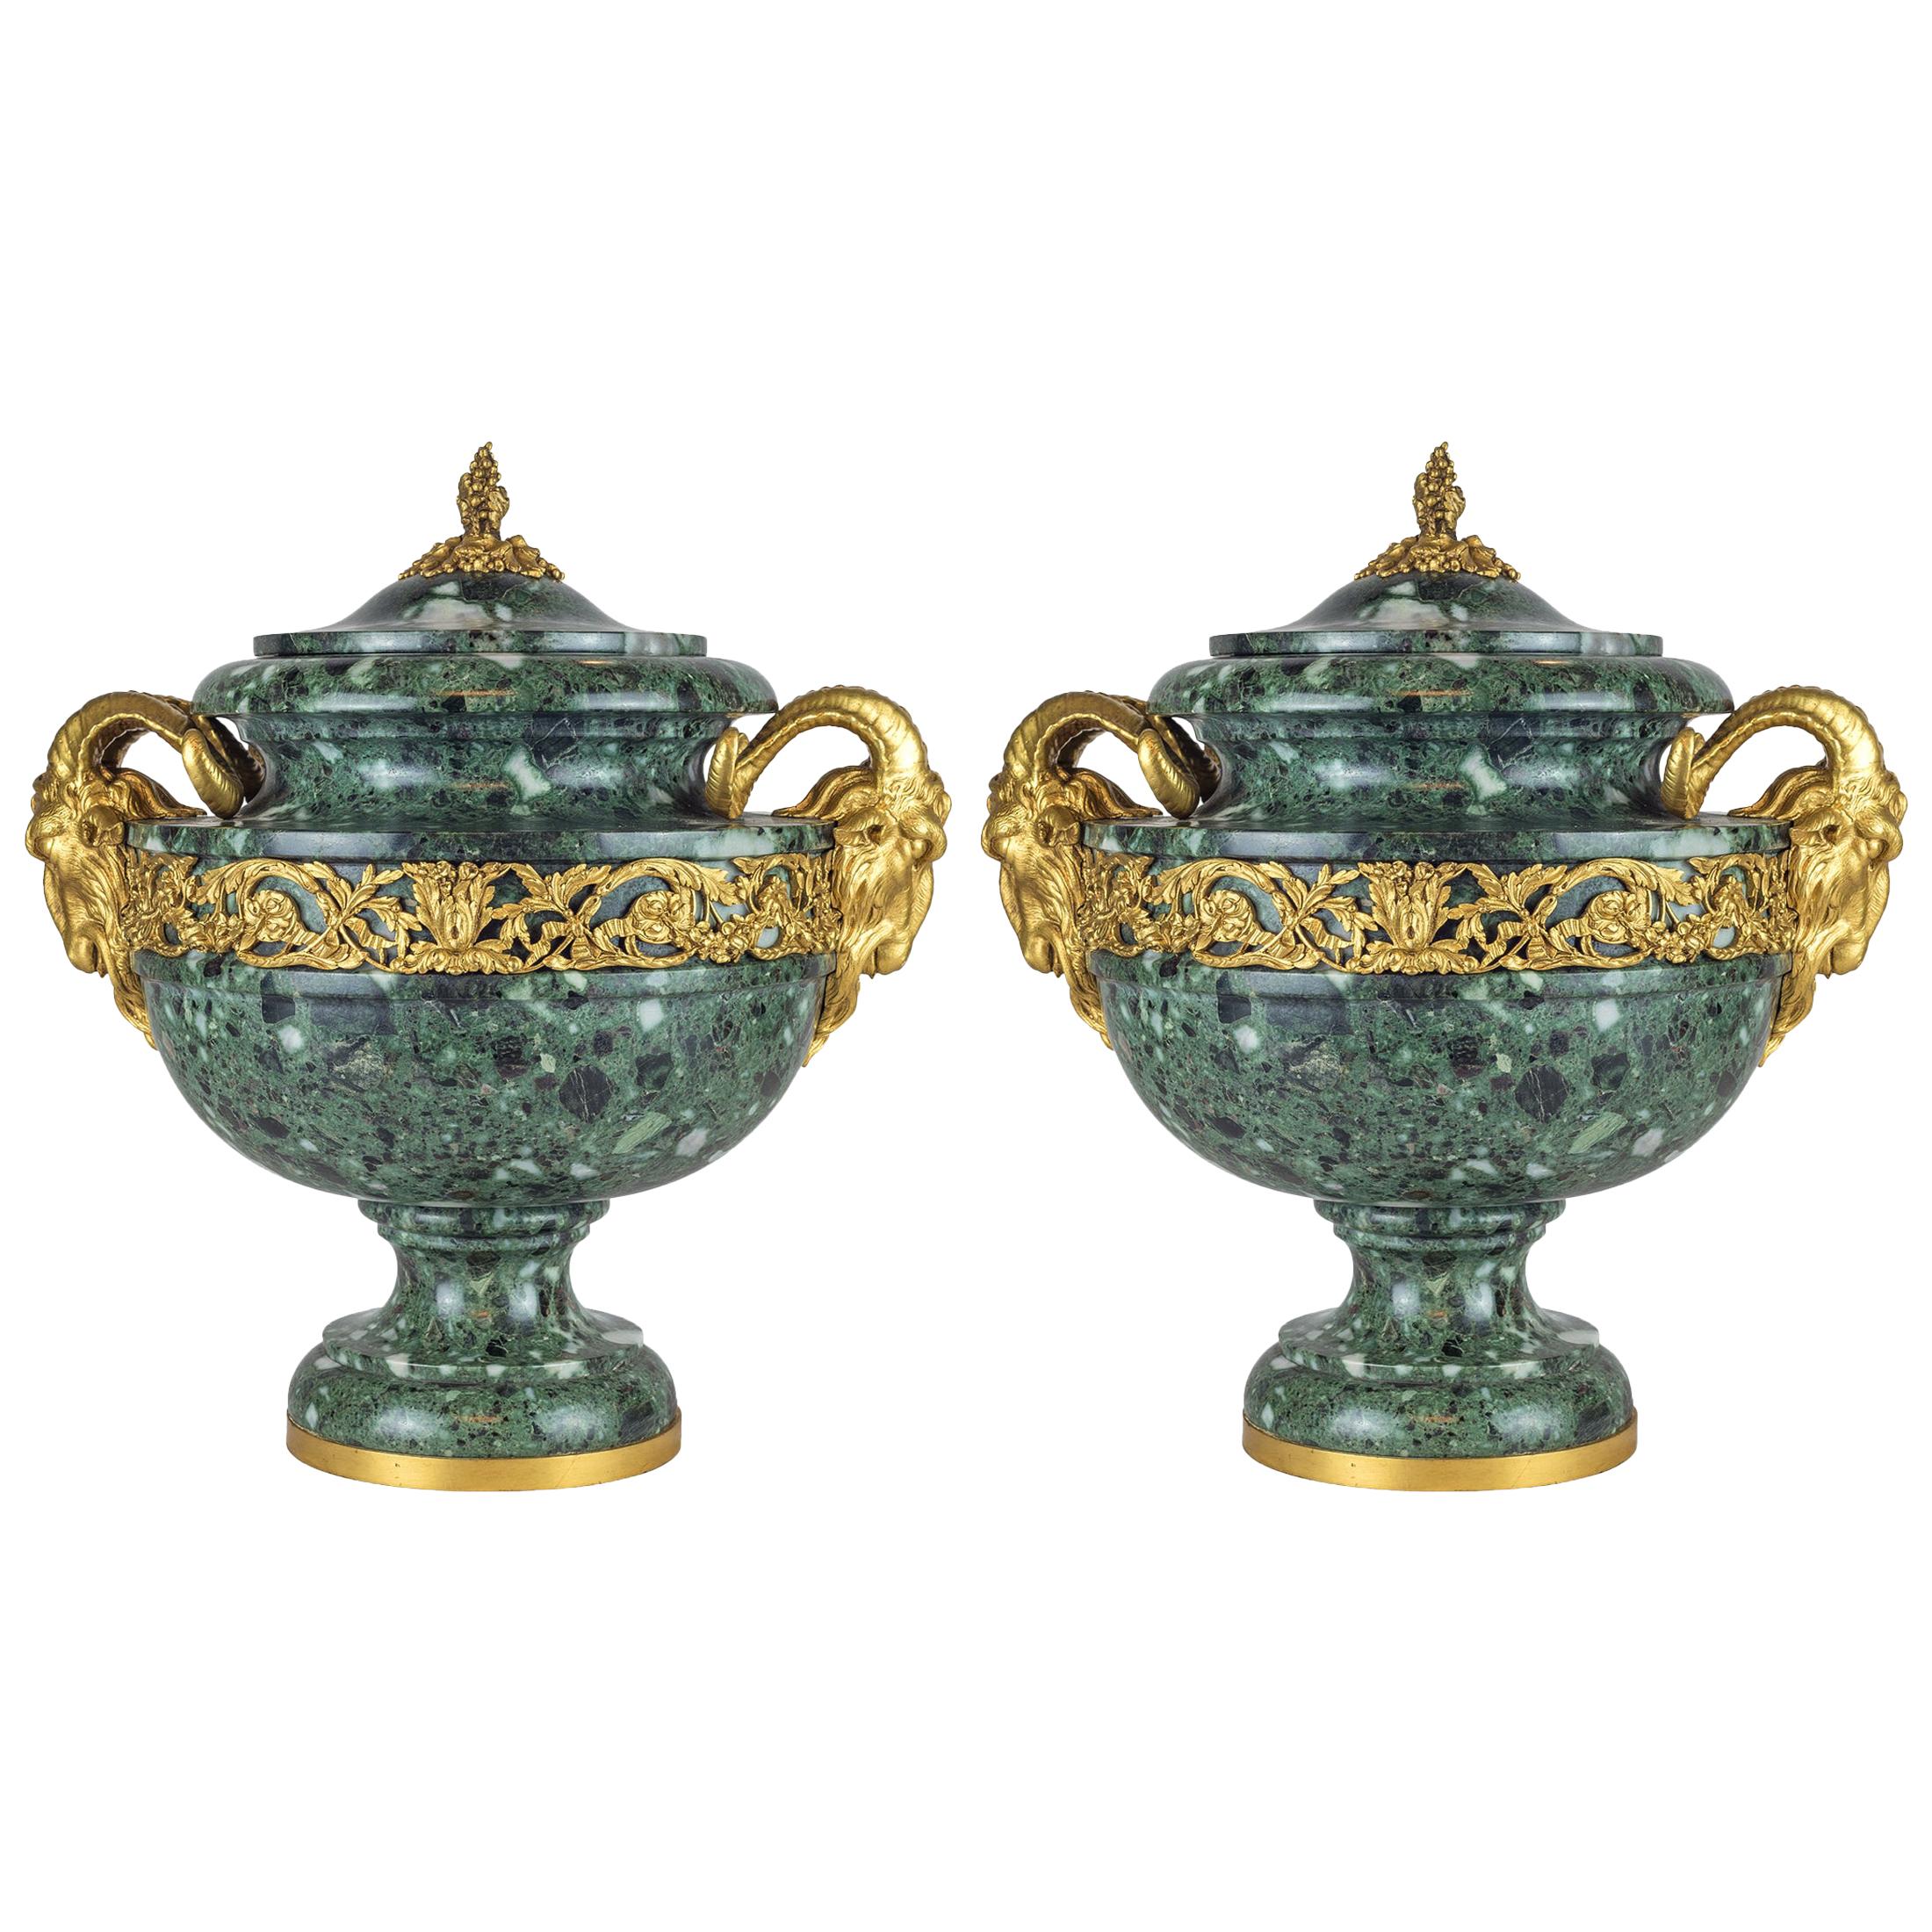 Paire d'urnes en marbre de style Louis XVI du 19ème siècle montées en bronze doré Verde Antico